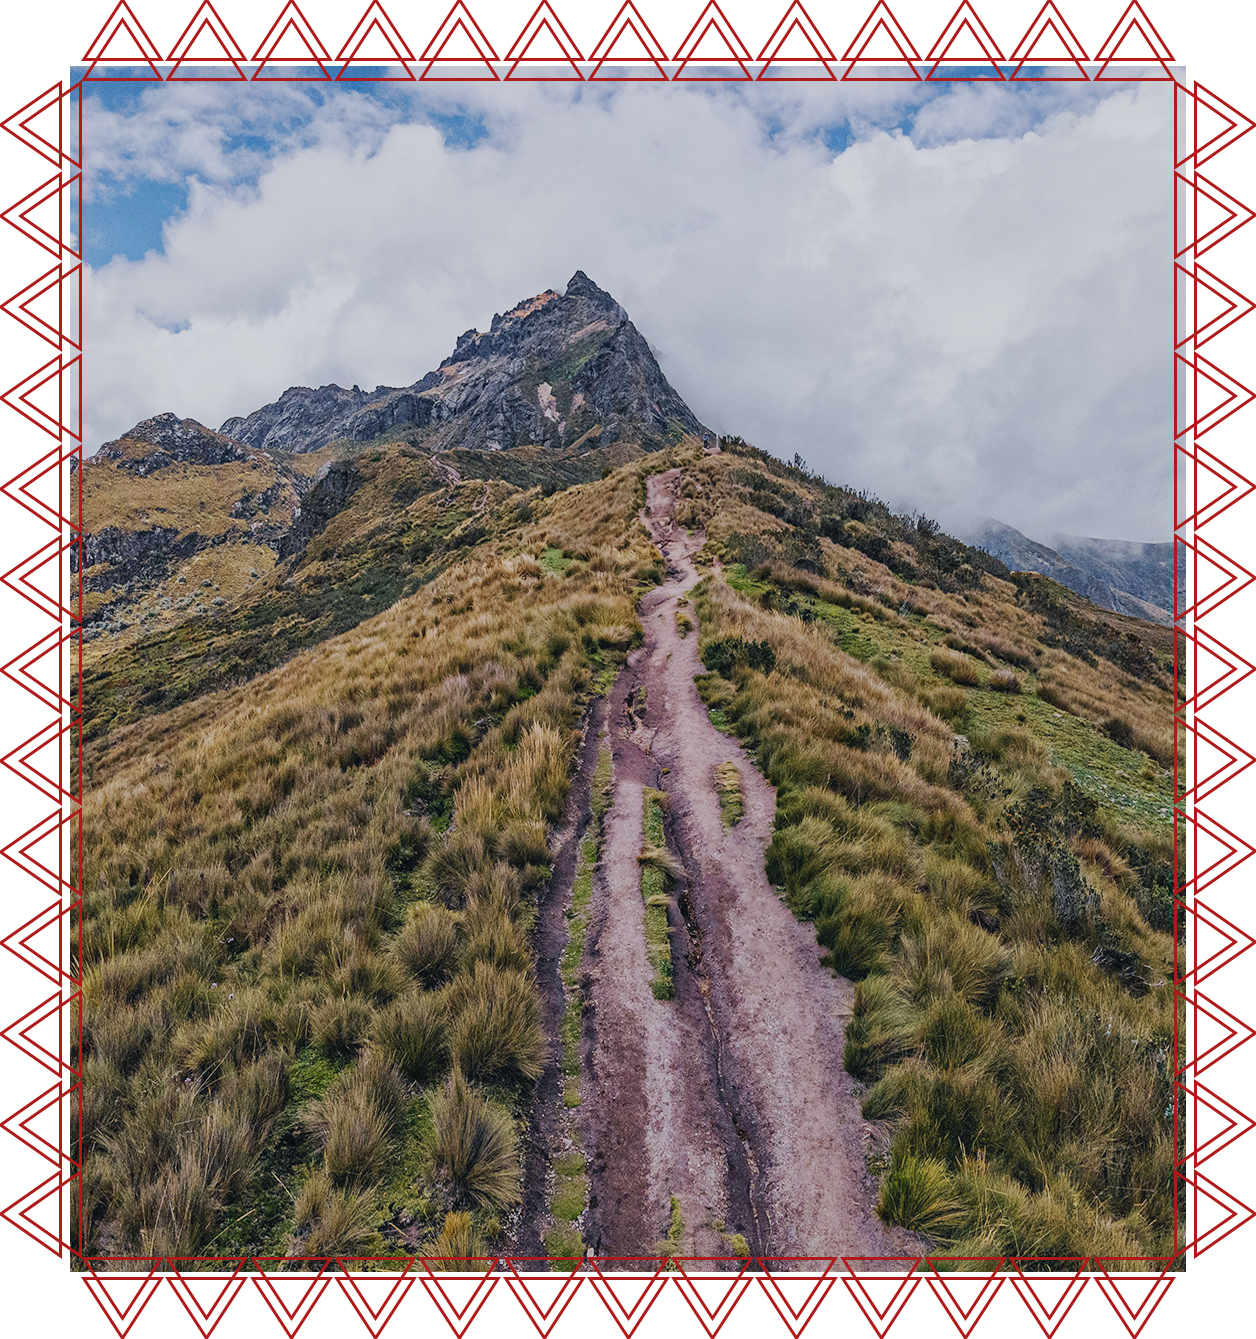 IACFS Schamanisches Wissen - Eine Reise nach Peru - Liebe die Erde wie deine Mutter - Ein Weg führt auf einen Berg in Peru